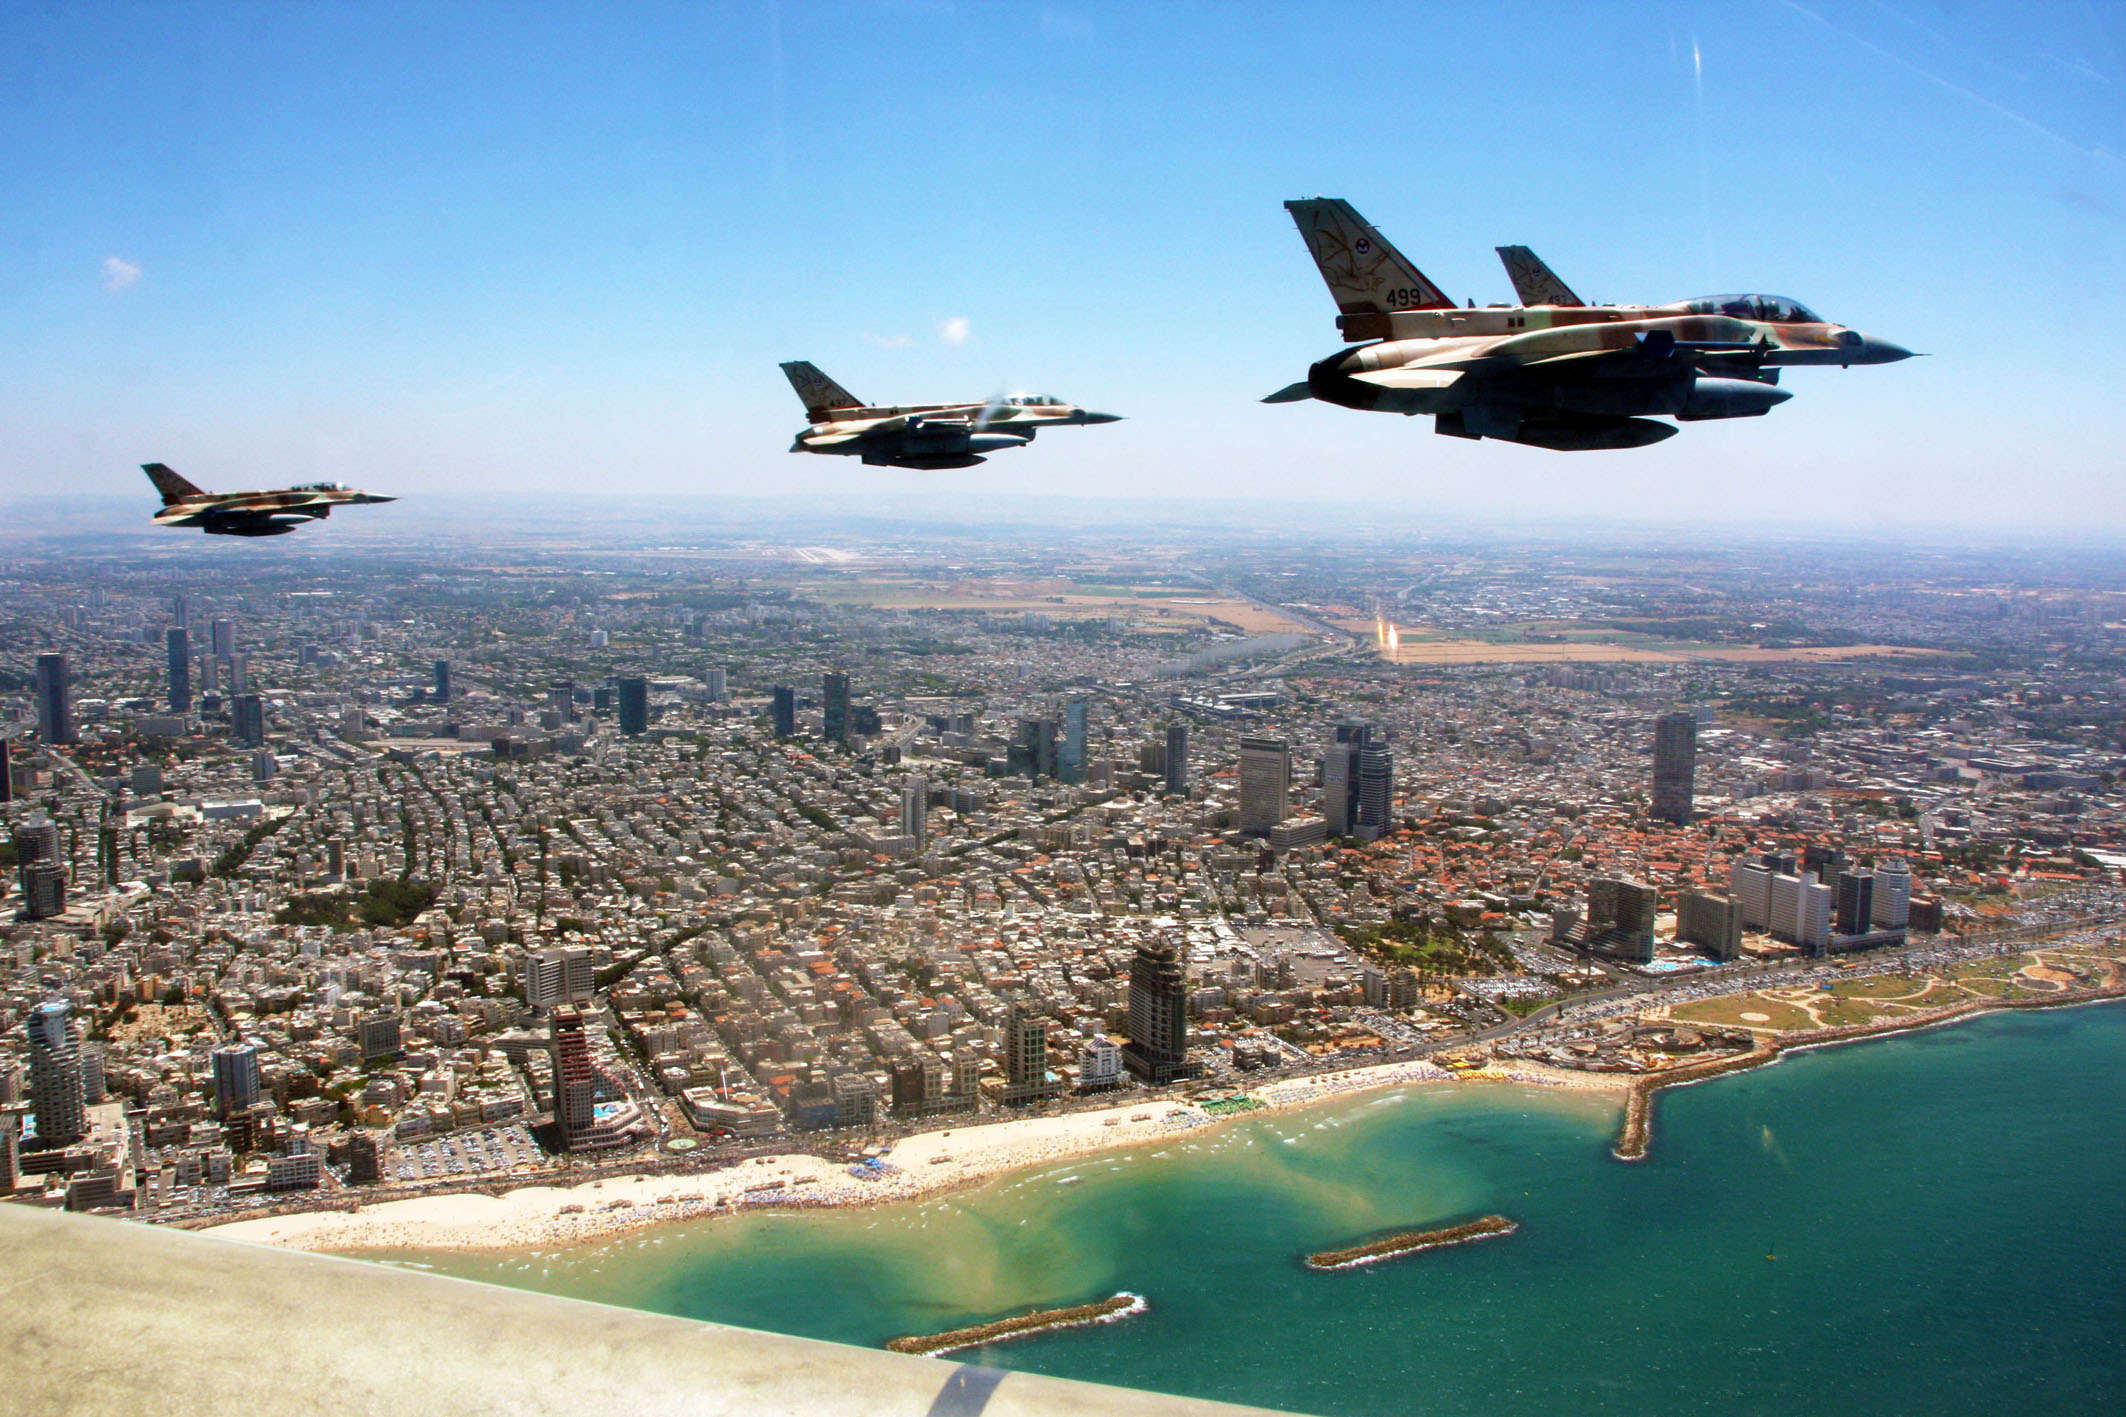 Israel's. Самолеты ВВС Израиля. Израиль дефенс Форс. Израильские военные самолеты. Истребители над городом.